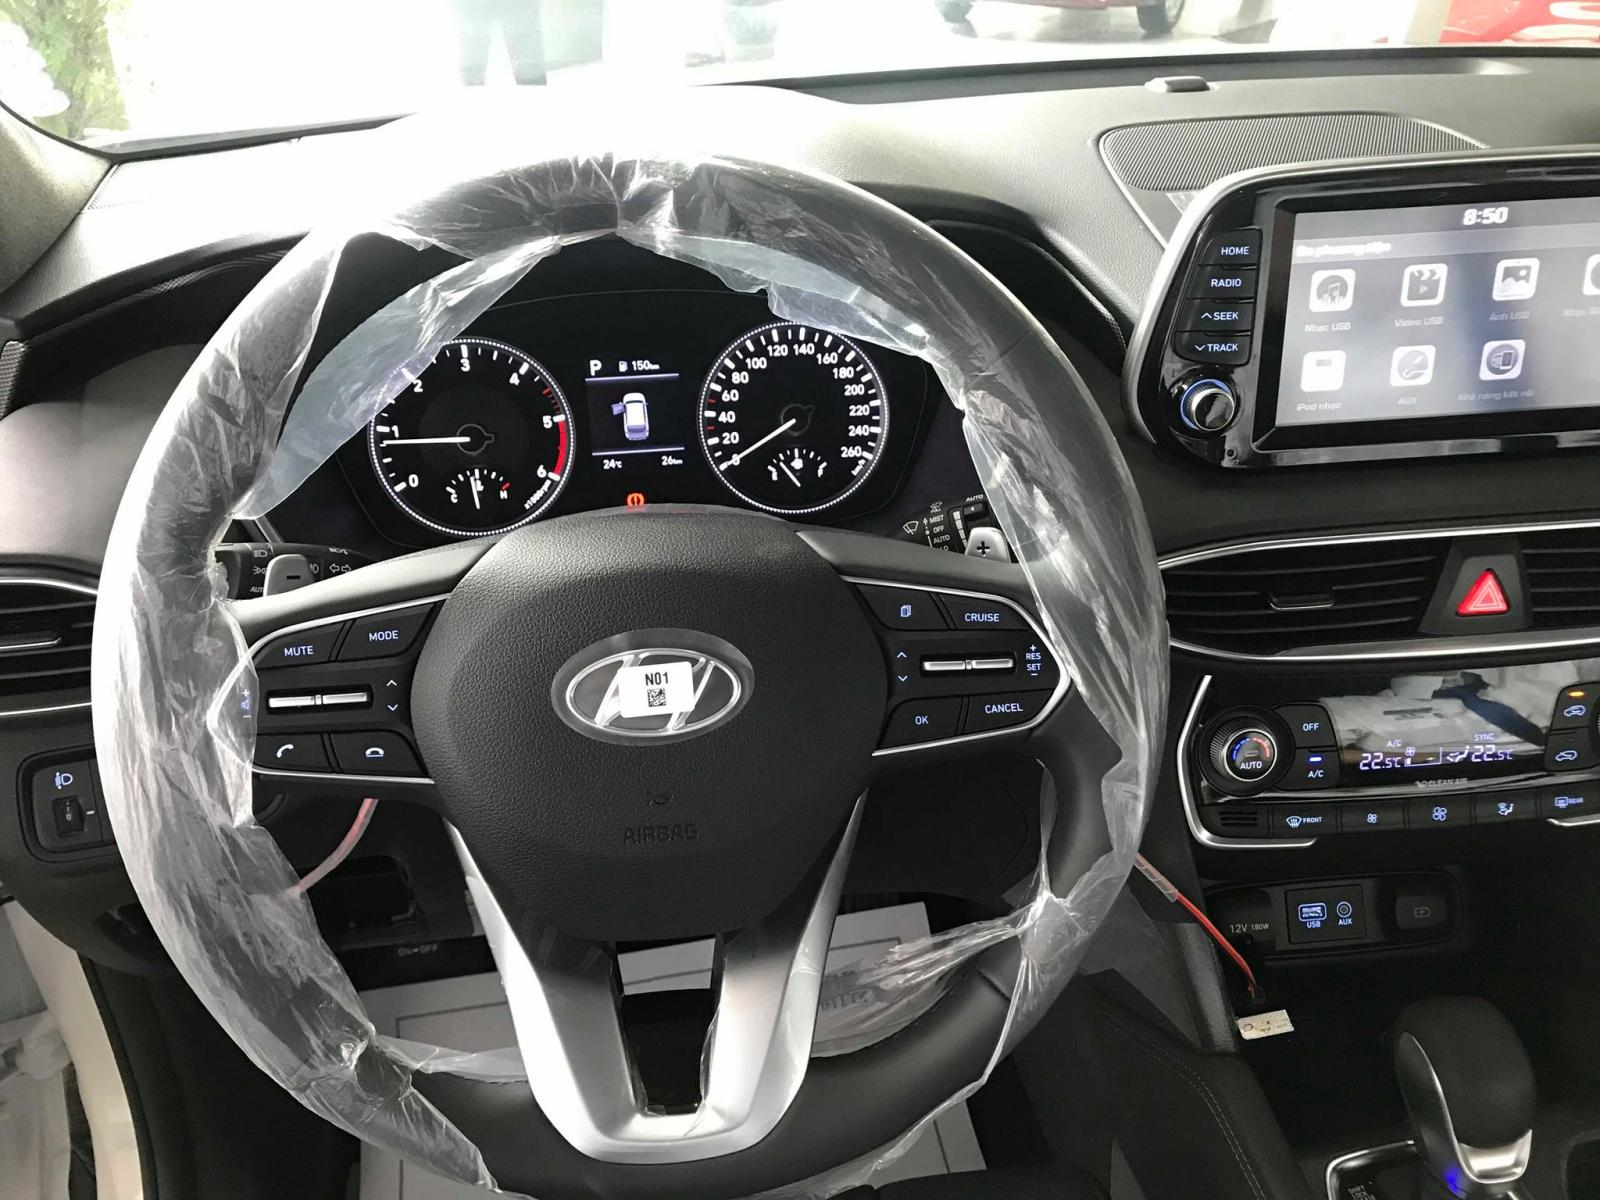 Hyundai Santa Fe 2019 - Cần bán Hyundai Santa Fe 2019, màu đen, giá cực tốt + Khuyến mãi hấp dẫn, LH: Hữu Hân 0902 965 732